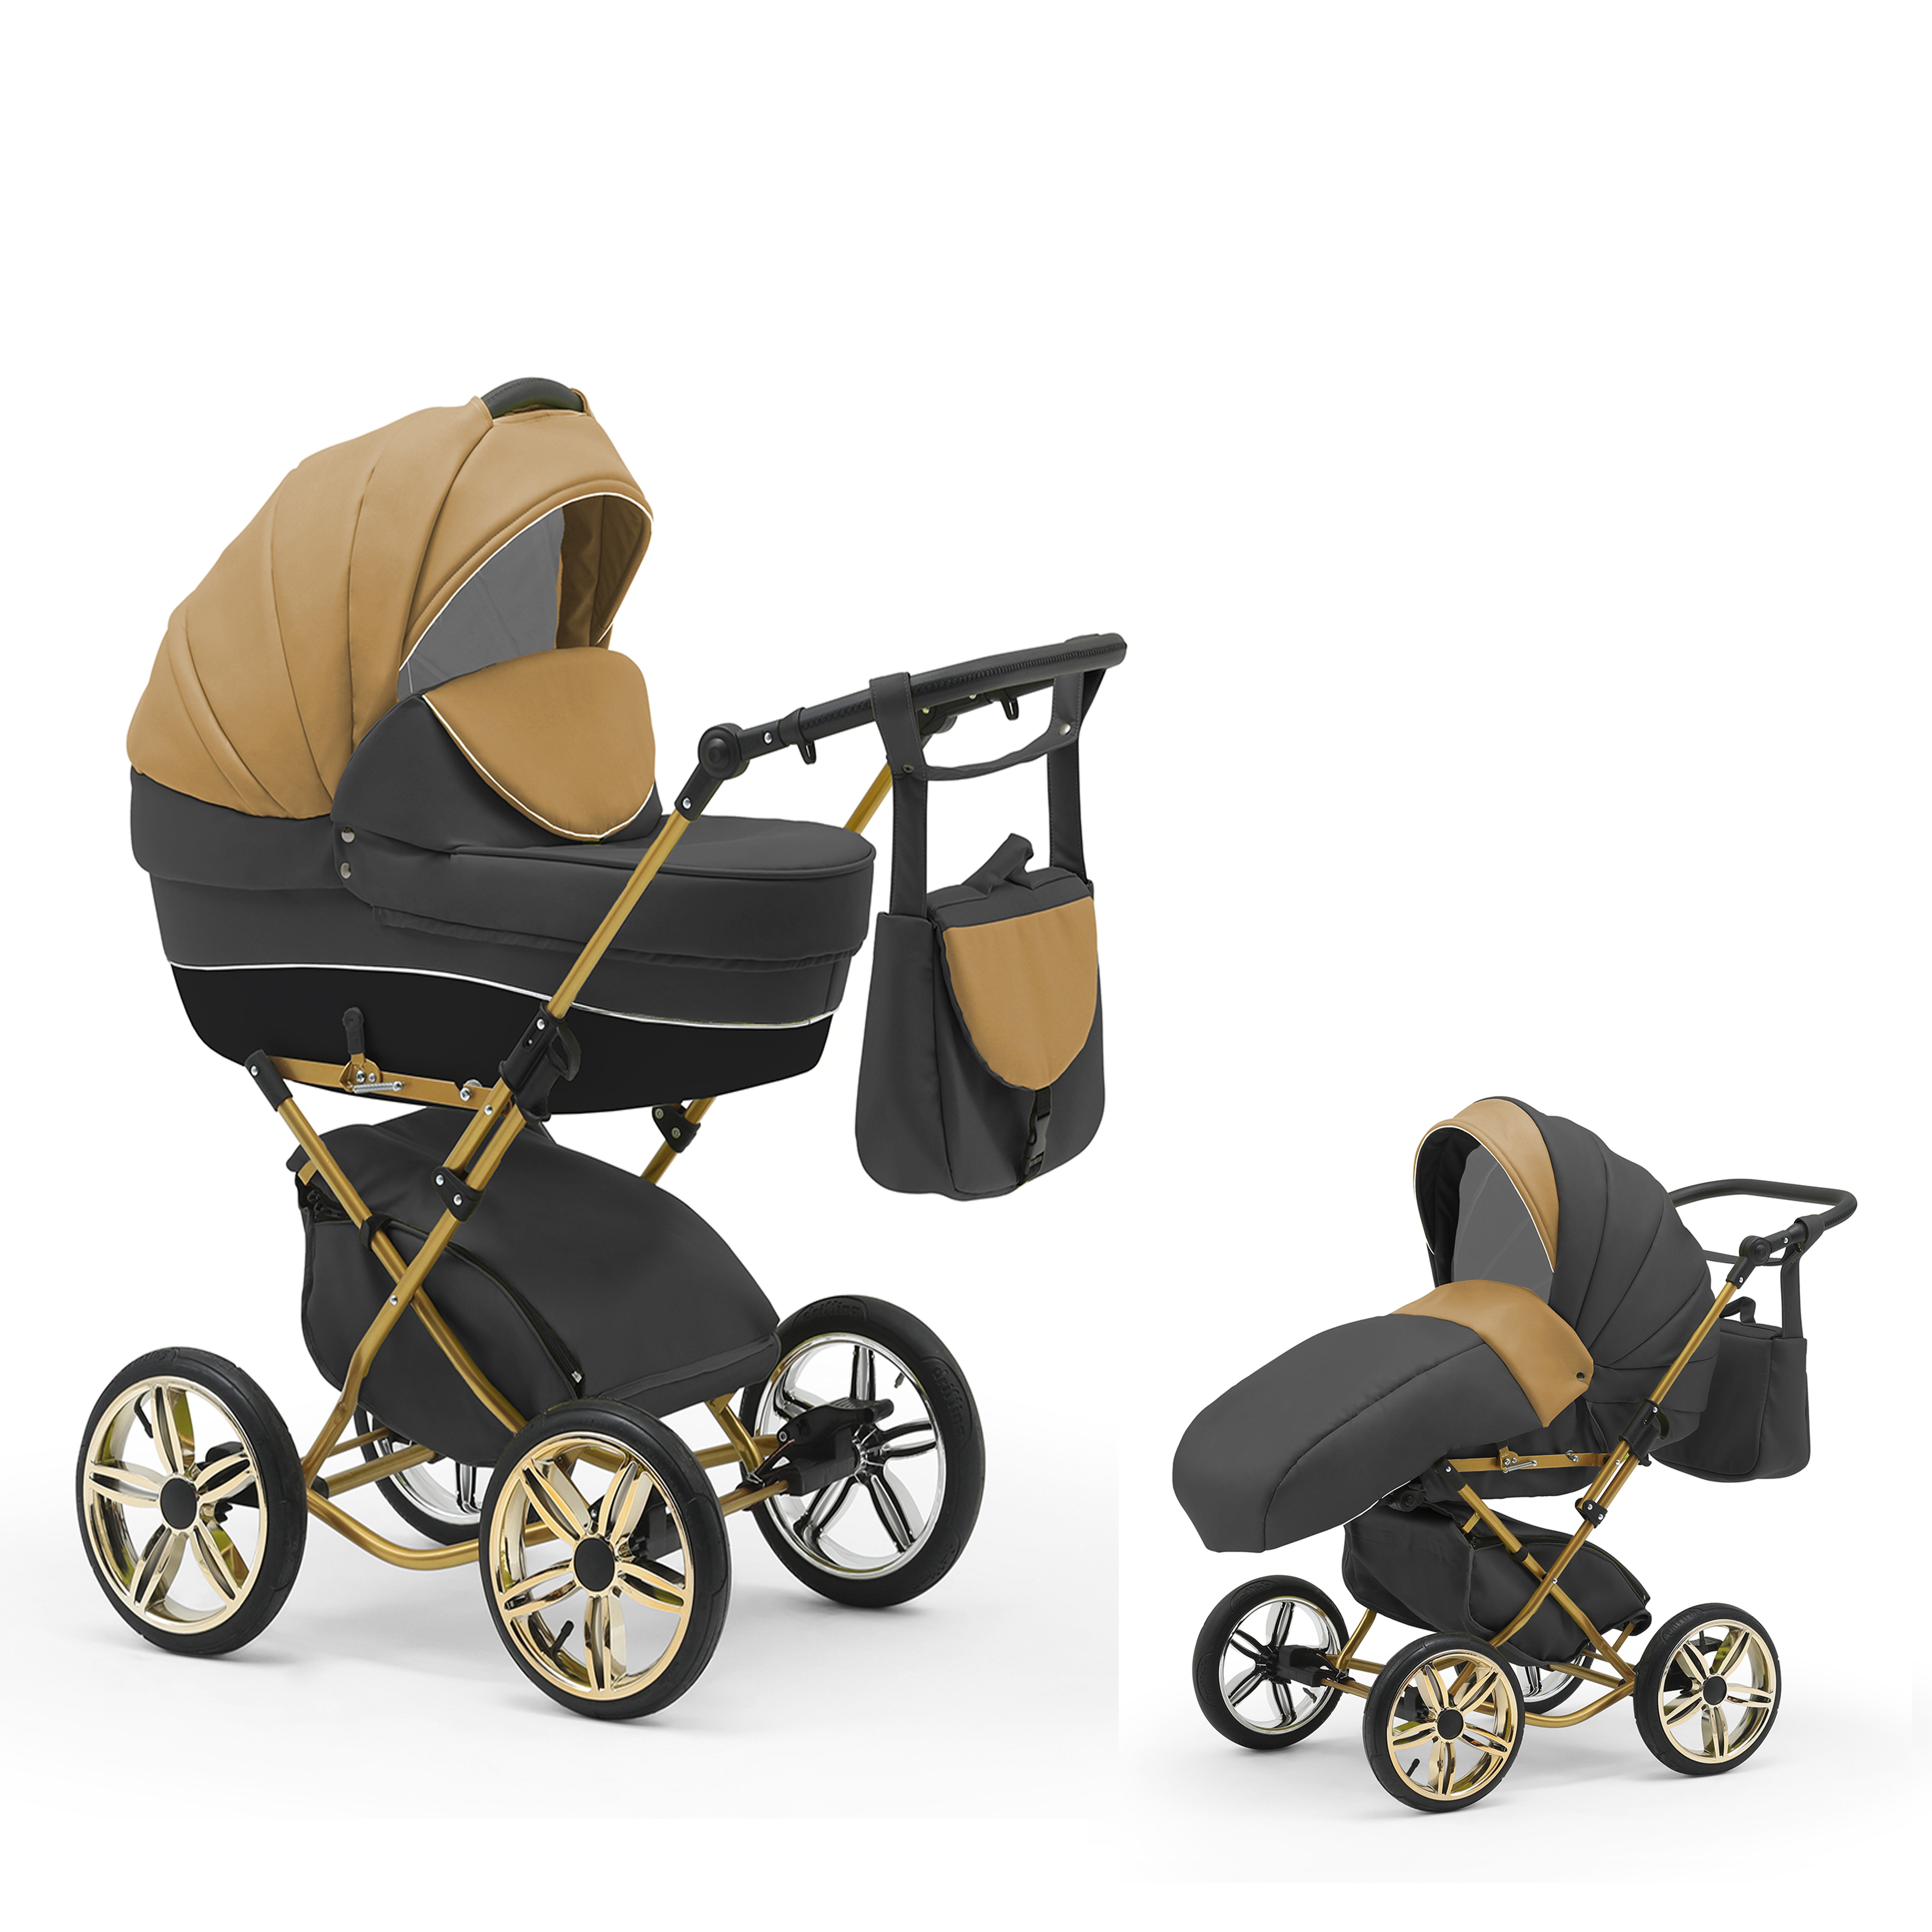 Geburt 2 11 - 4 30 Teile Beige-Grau Sorento Designs babies-on-wheels 1 - bis Jahre von in Kombi-Kinderwagen in